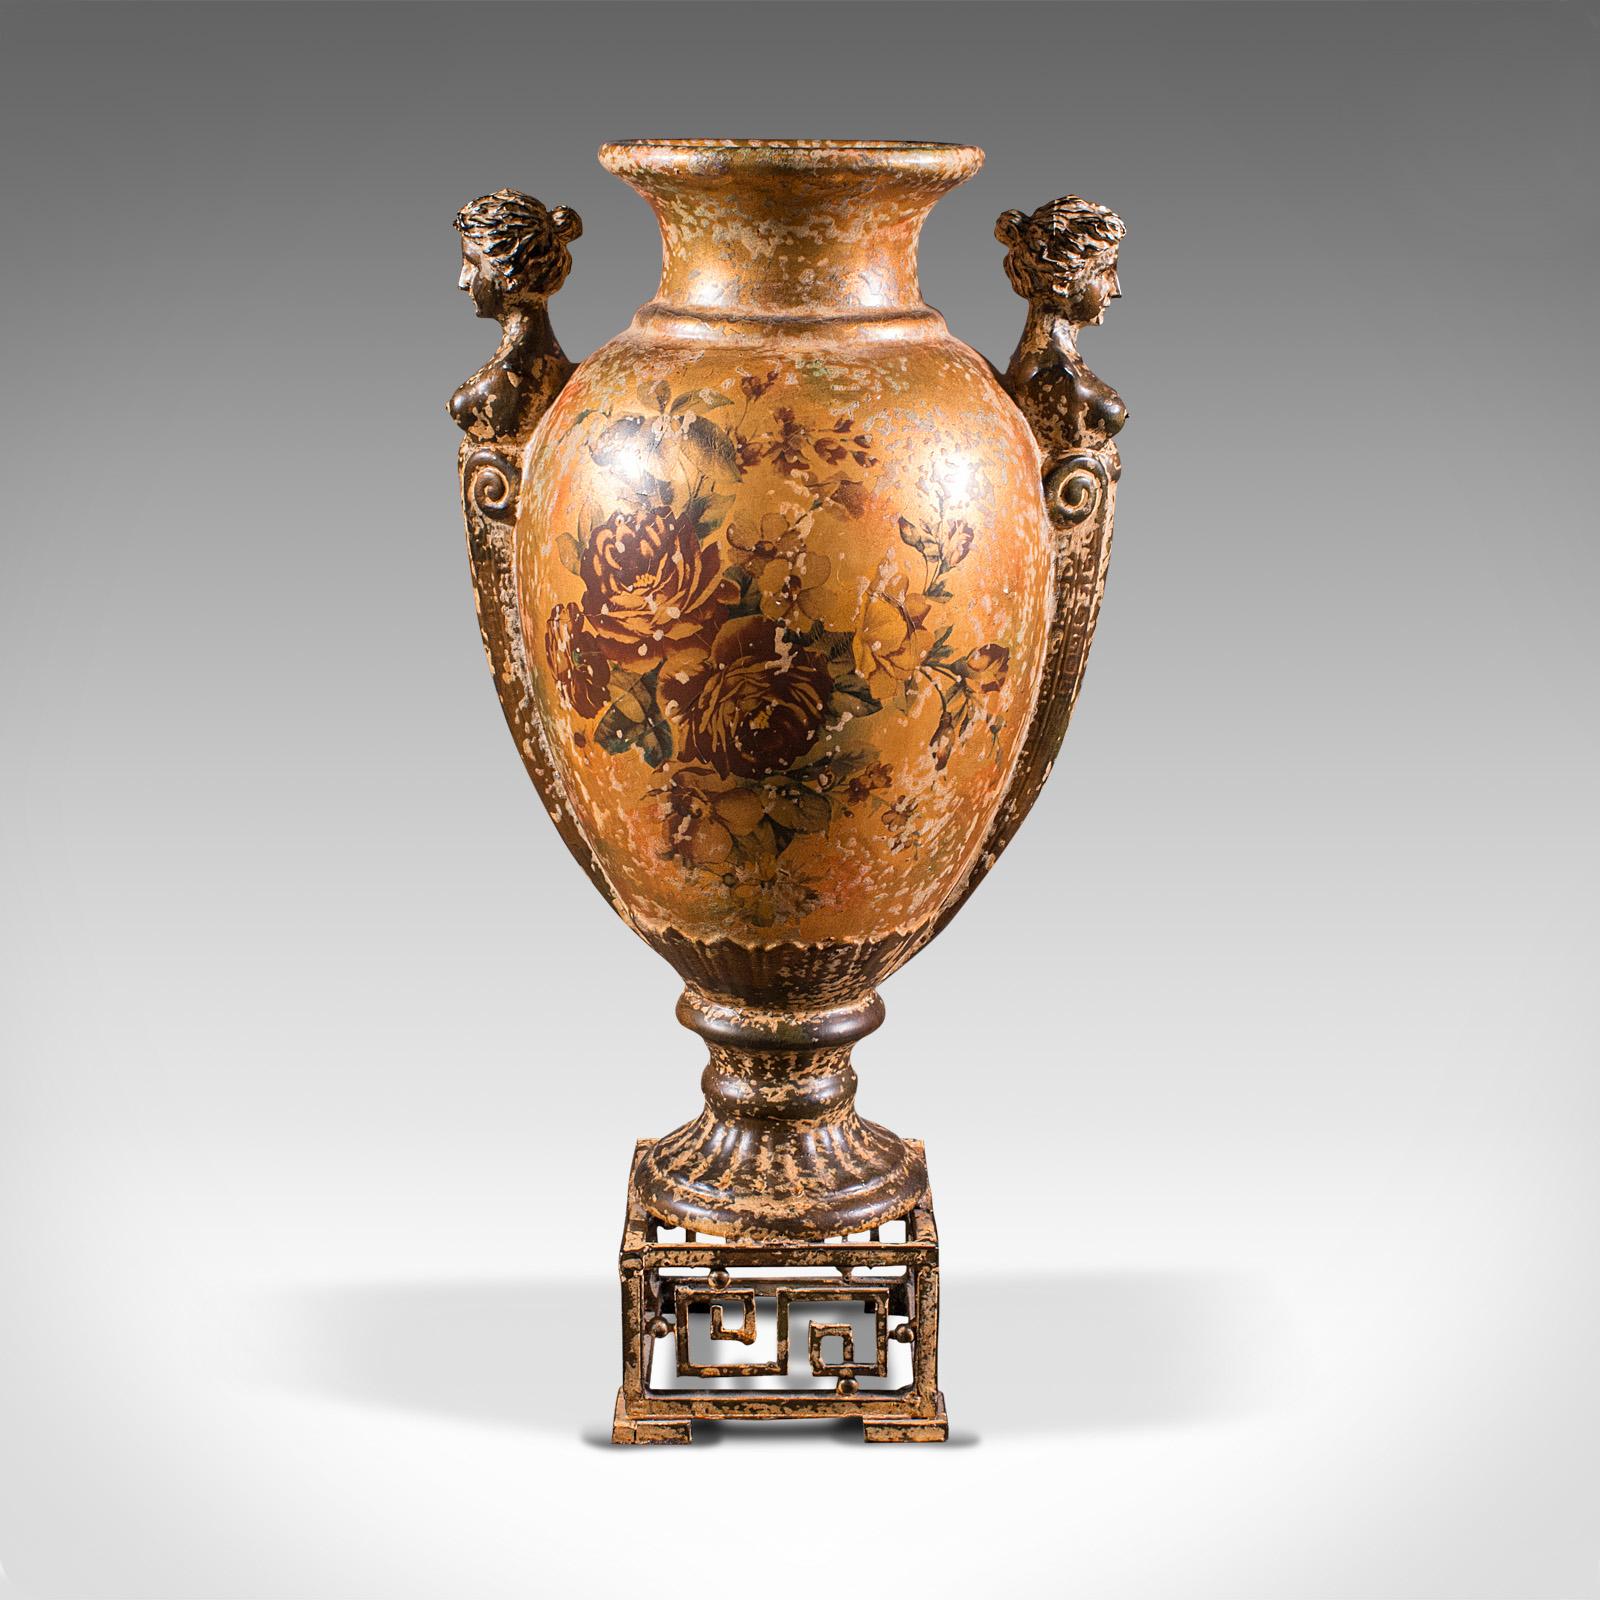 Dies ist eine hohe dekorative Vintage-Vase. Eine orientalische Balusterurne aus Keramik mit italienischem Geschmack, aus dem späten 20. Jahrhundert, um 1970.

Glänzende Vergoldung und ansprechende Form
Zeigt eine wünschenswerte gealterte